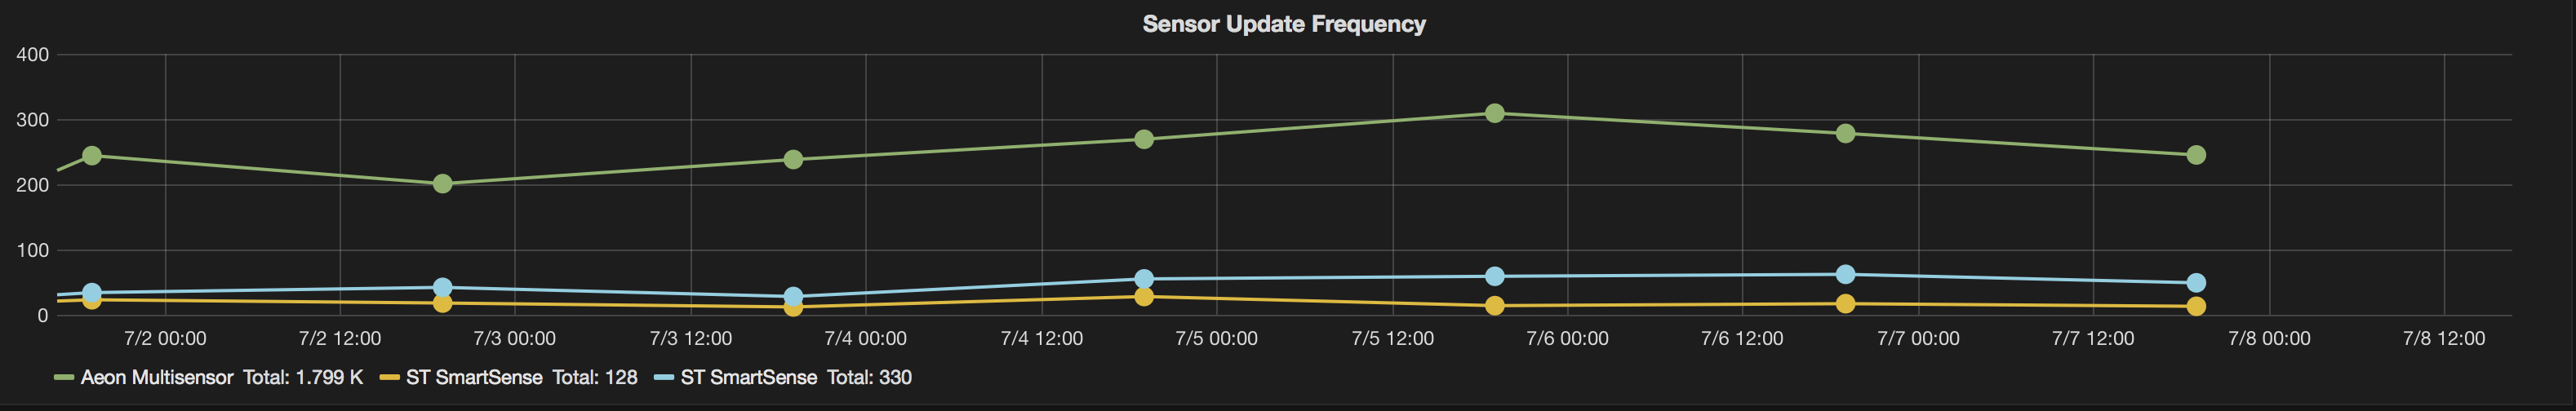 Sensor Update Frequency